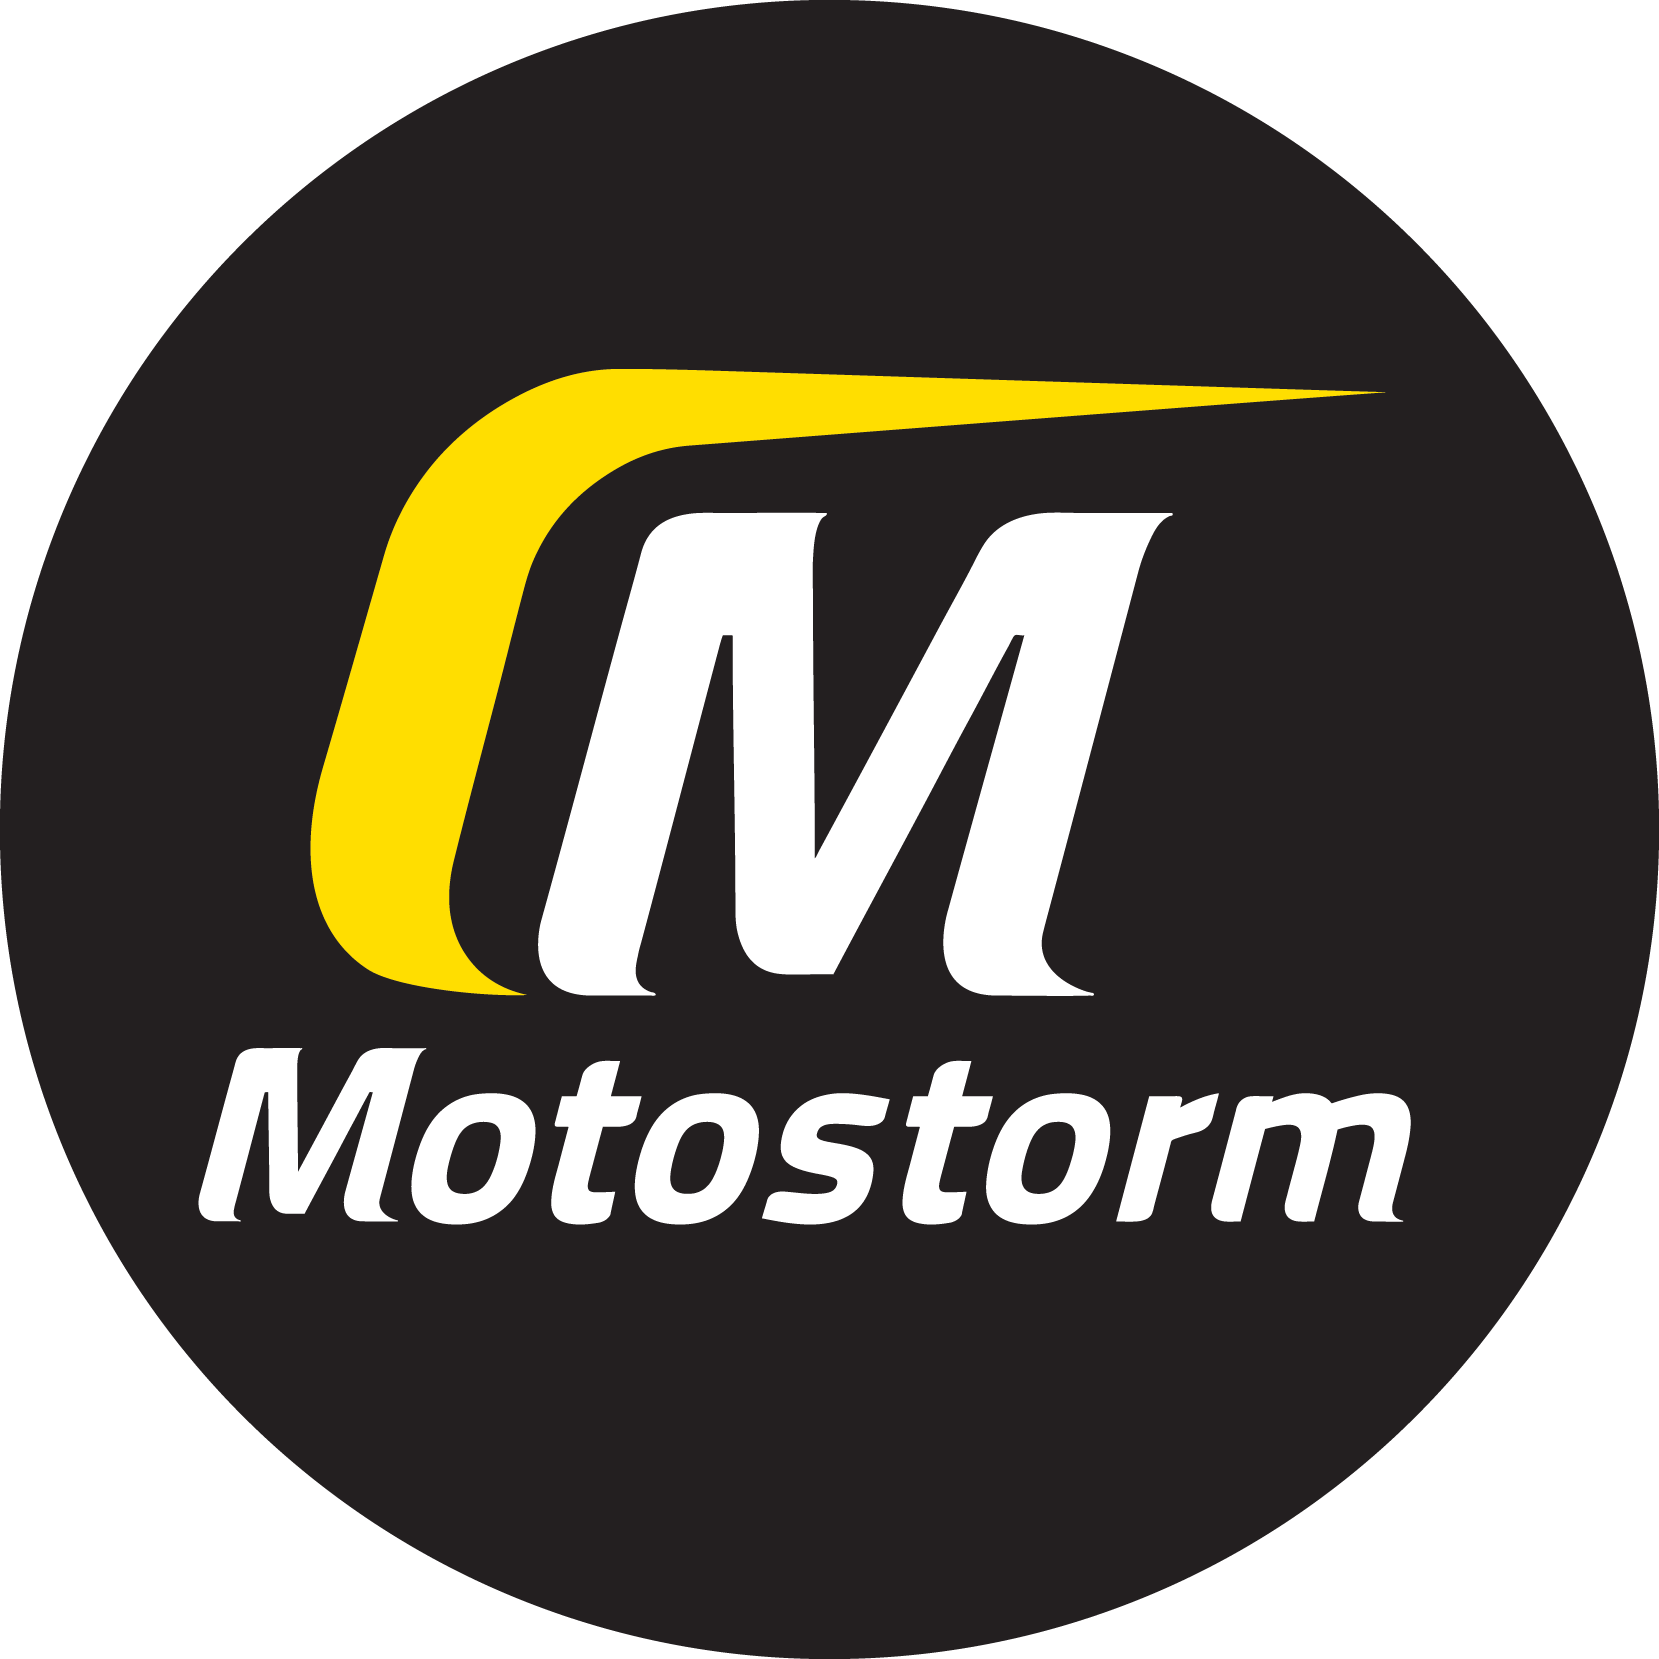 MotoStorm